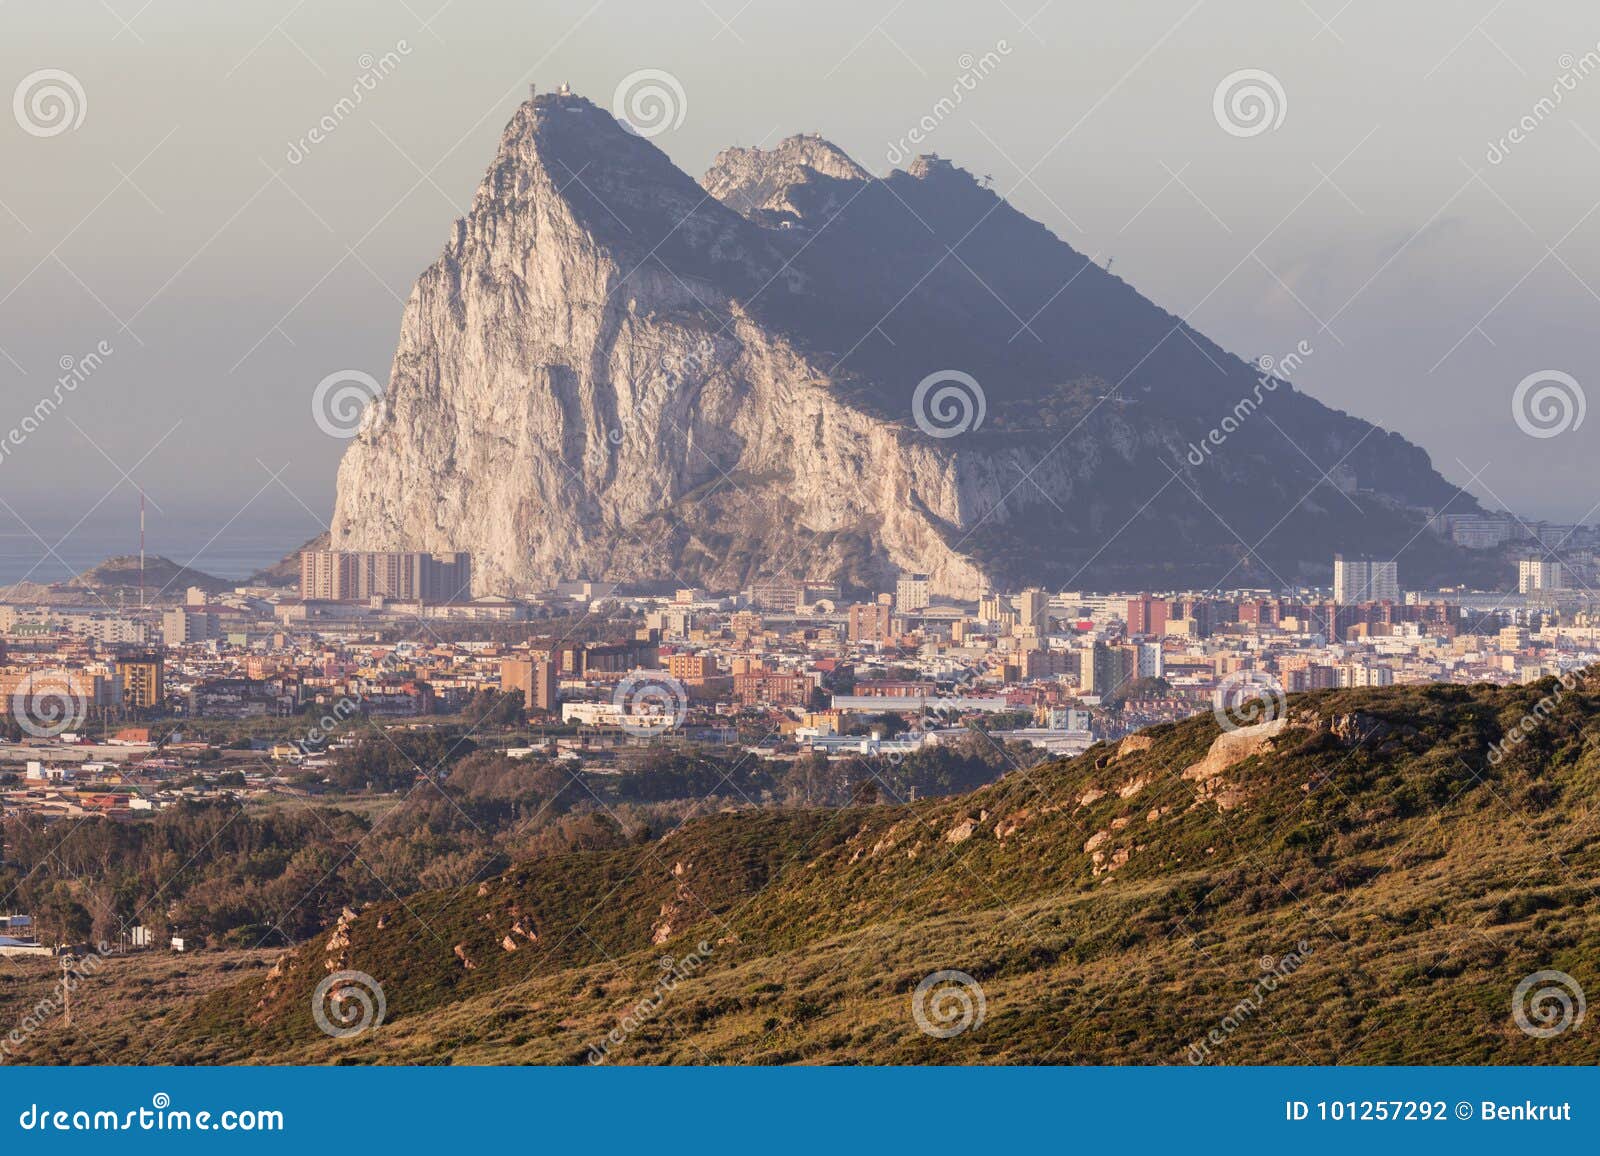 panorama of gibraltar seen from la linea de la concepcion